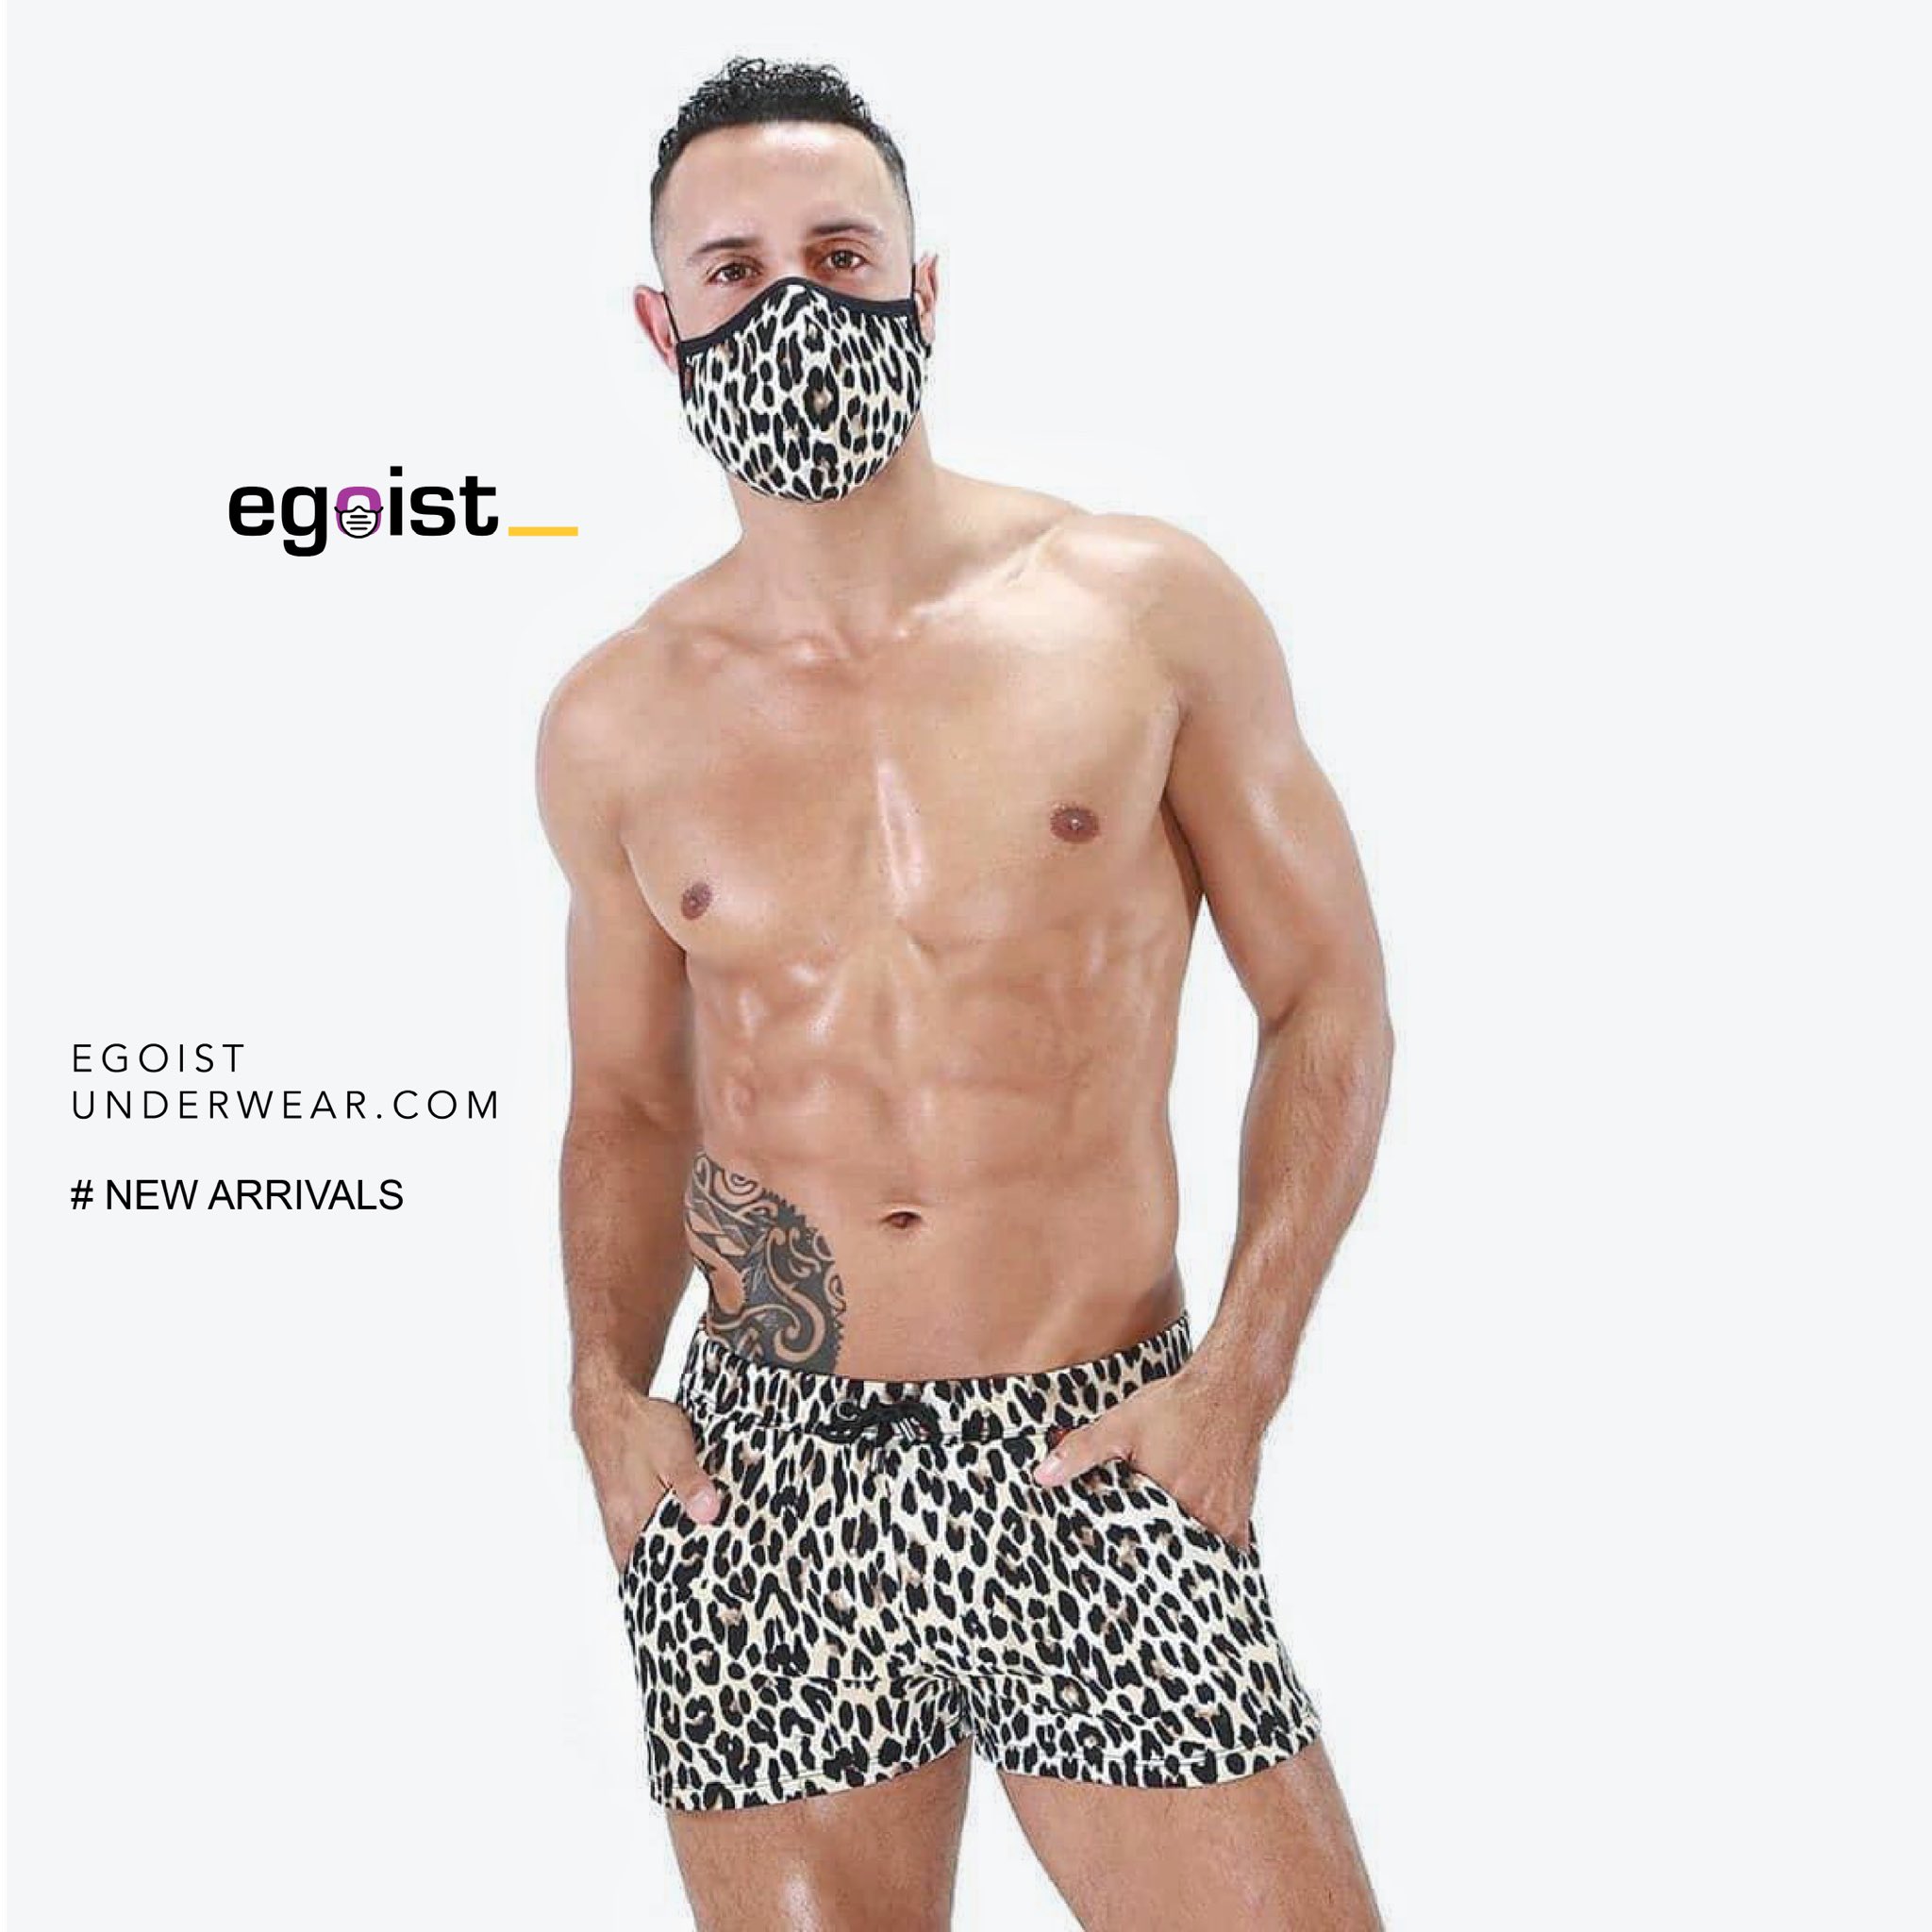 Egoist Underwear on X: B E A S T 🐆 M O D E